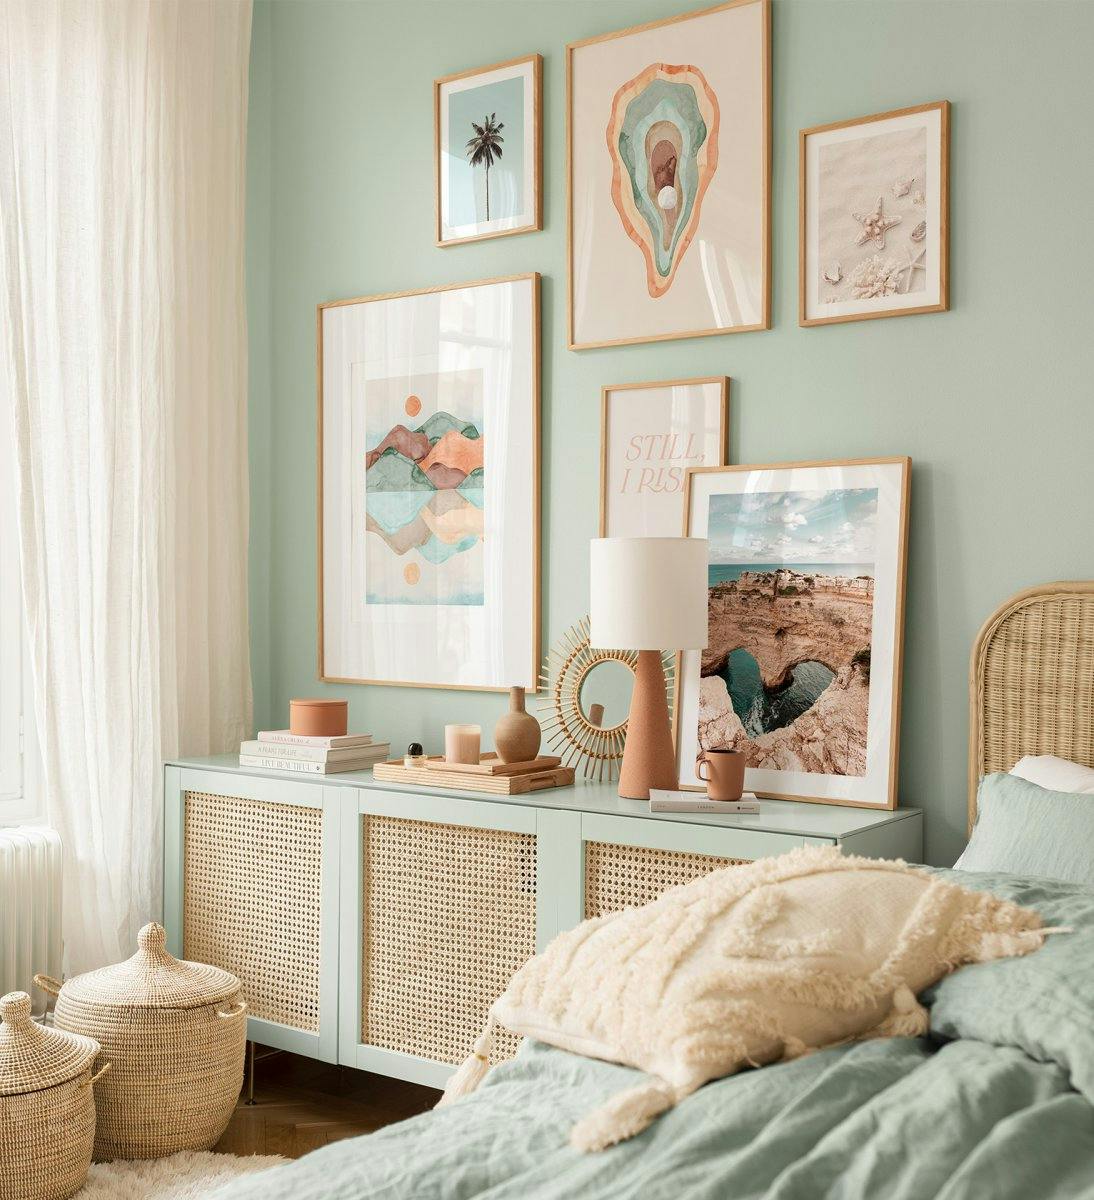 مطبوعات فنية ملونة وصور فوتوغرافية للطبيعة بألوان مختلفة تناسب غرفة النوم أو غرفة المعيشة